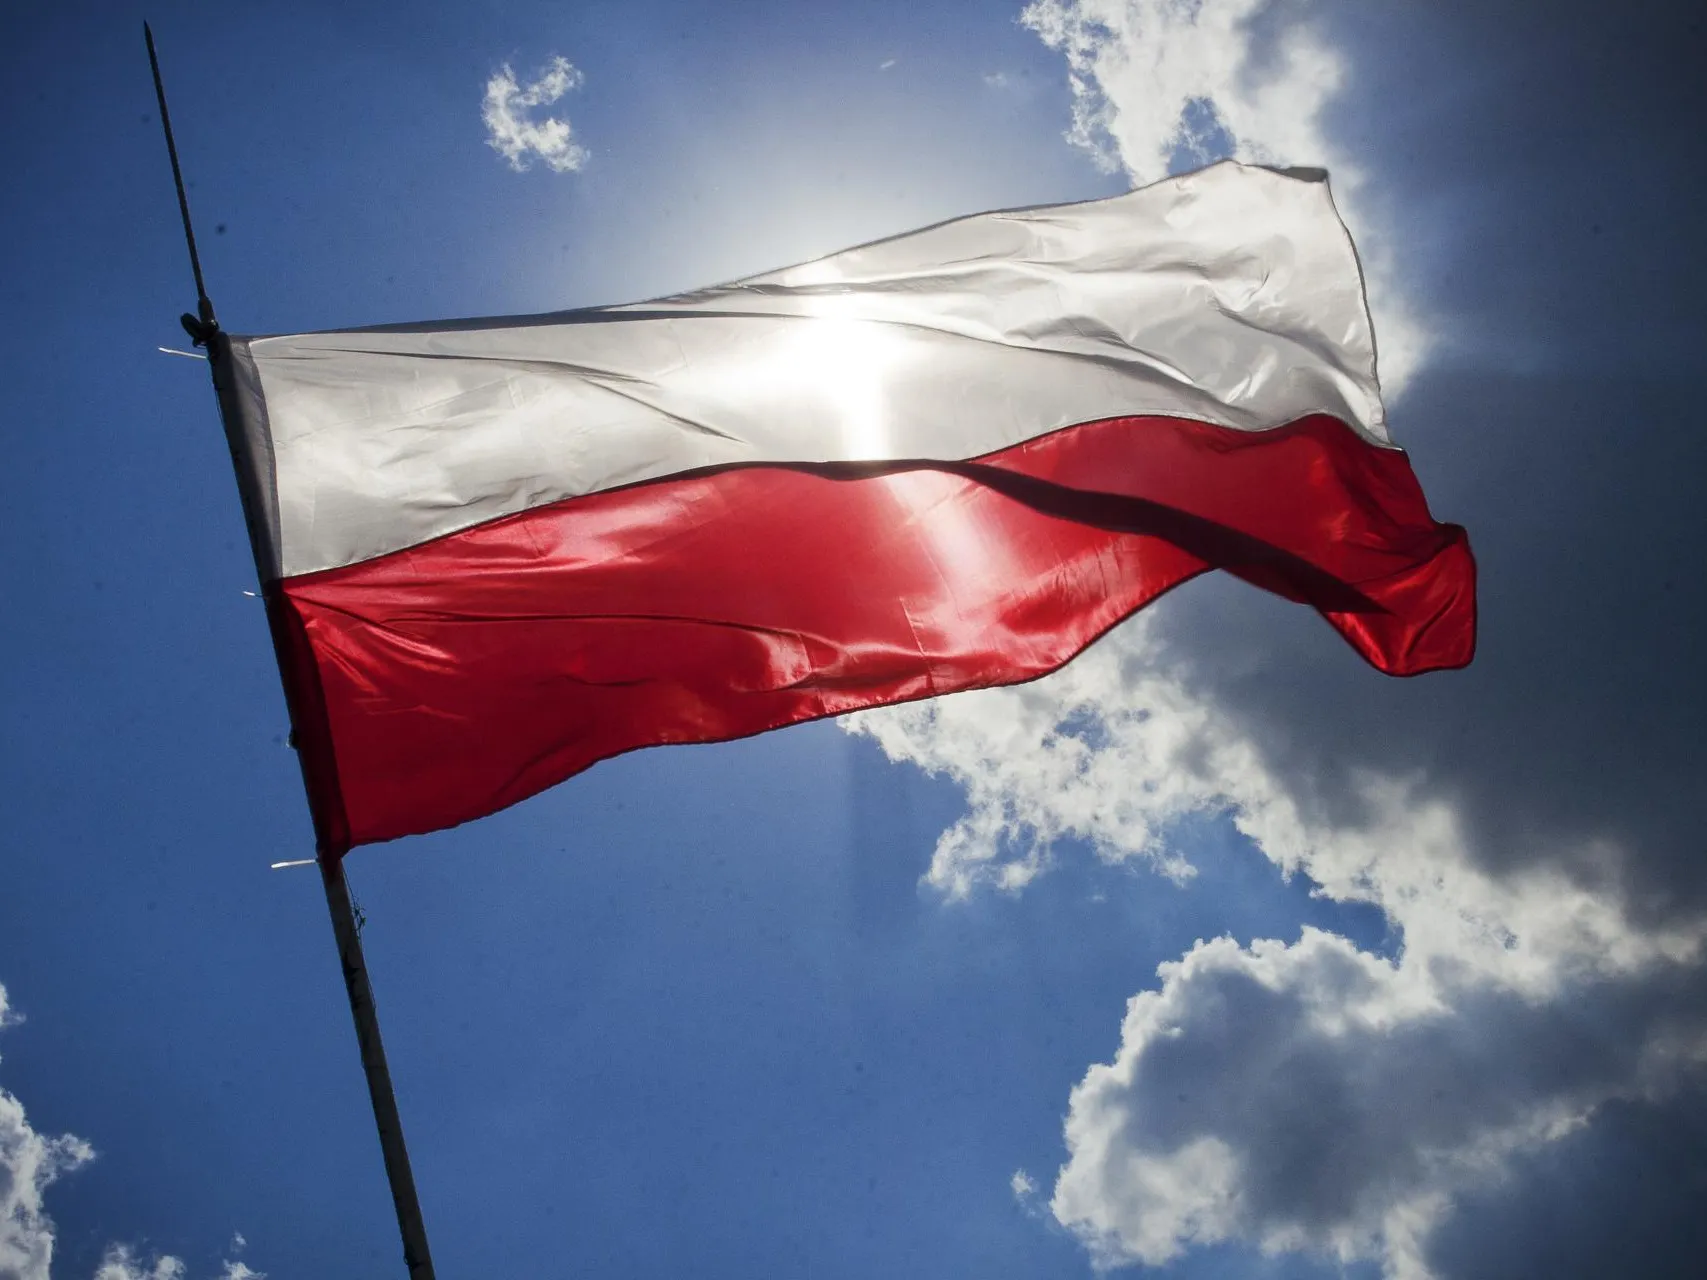 Премьер-министр Польши Дональд Туск заявил, что власти не будут минировать границу